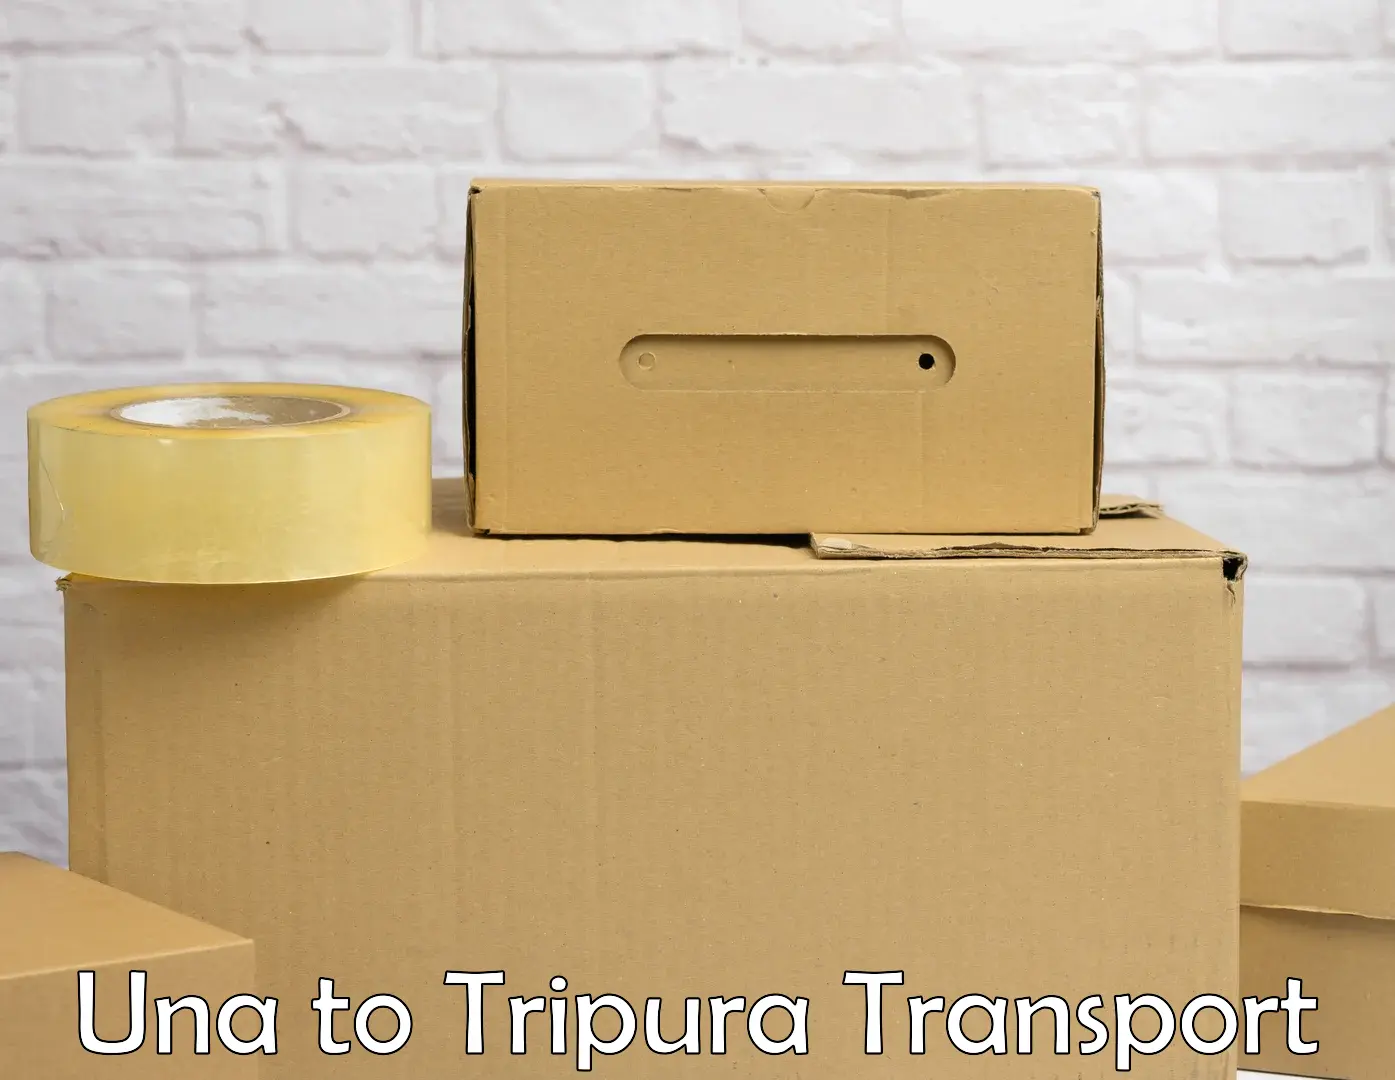 Door to door transport services Una to Udaipur Tripura